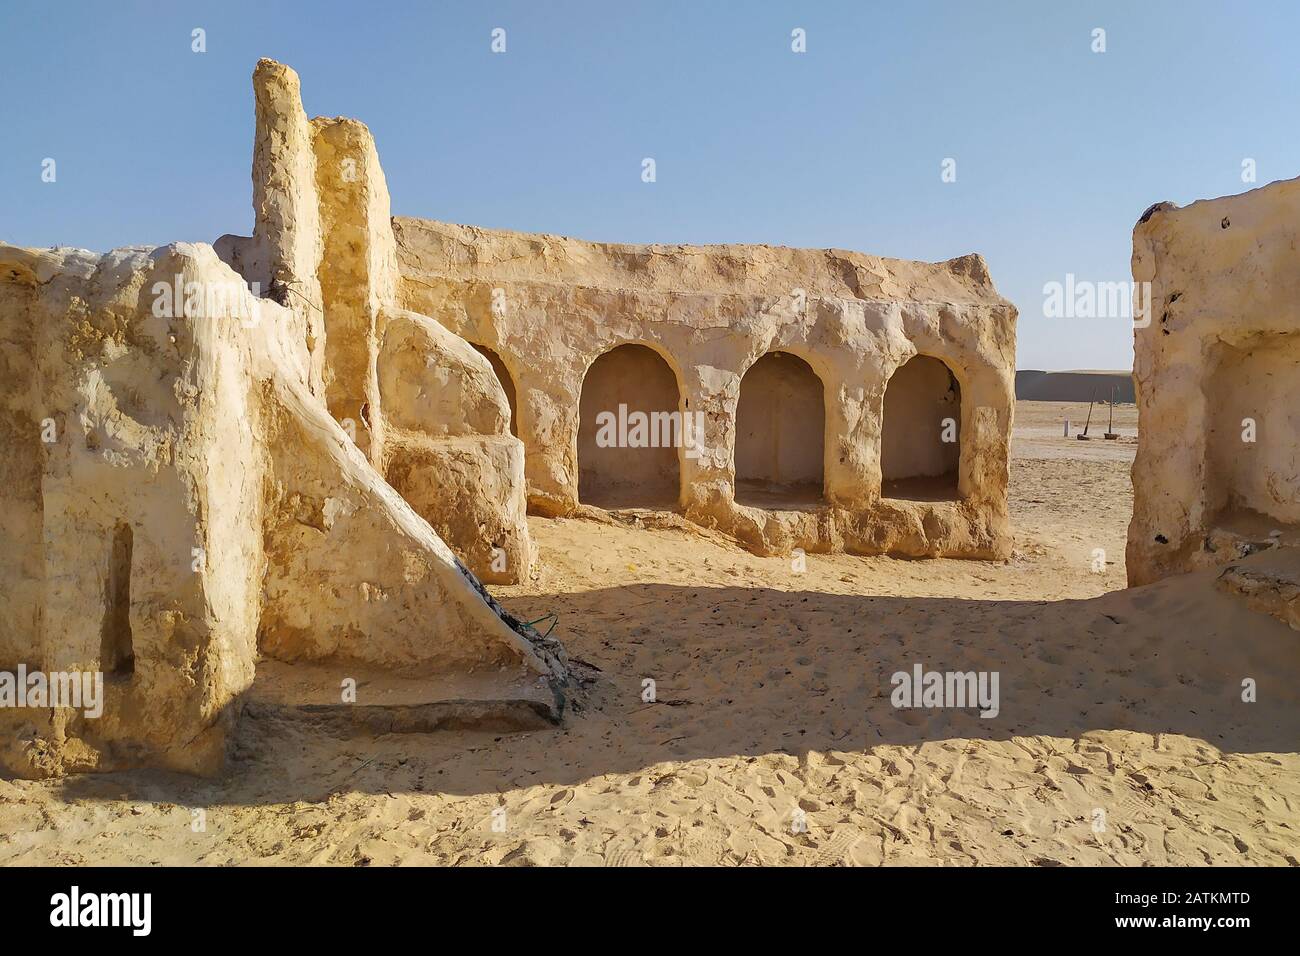 Nefta, Tunesia - 29. Juni 2019. Star Wars Tatooine Dörfer in Tunesien Stockfoto